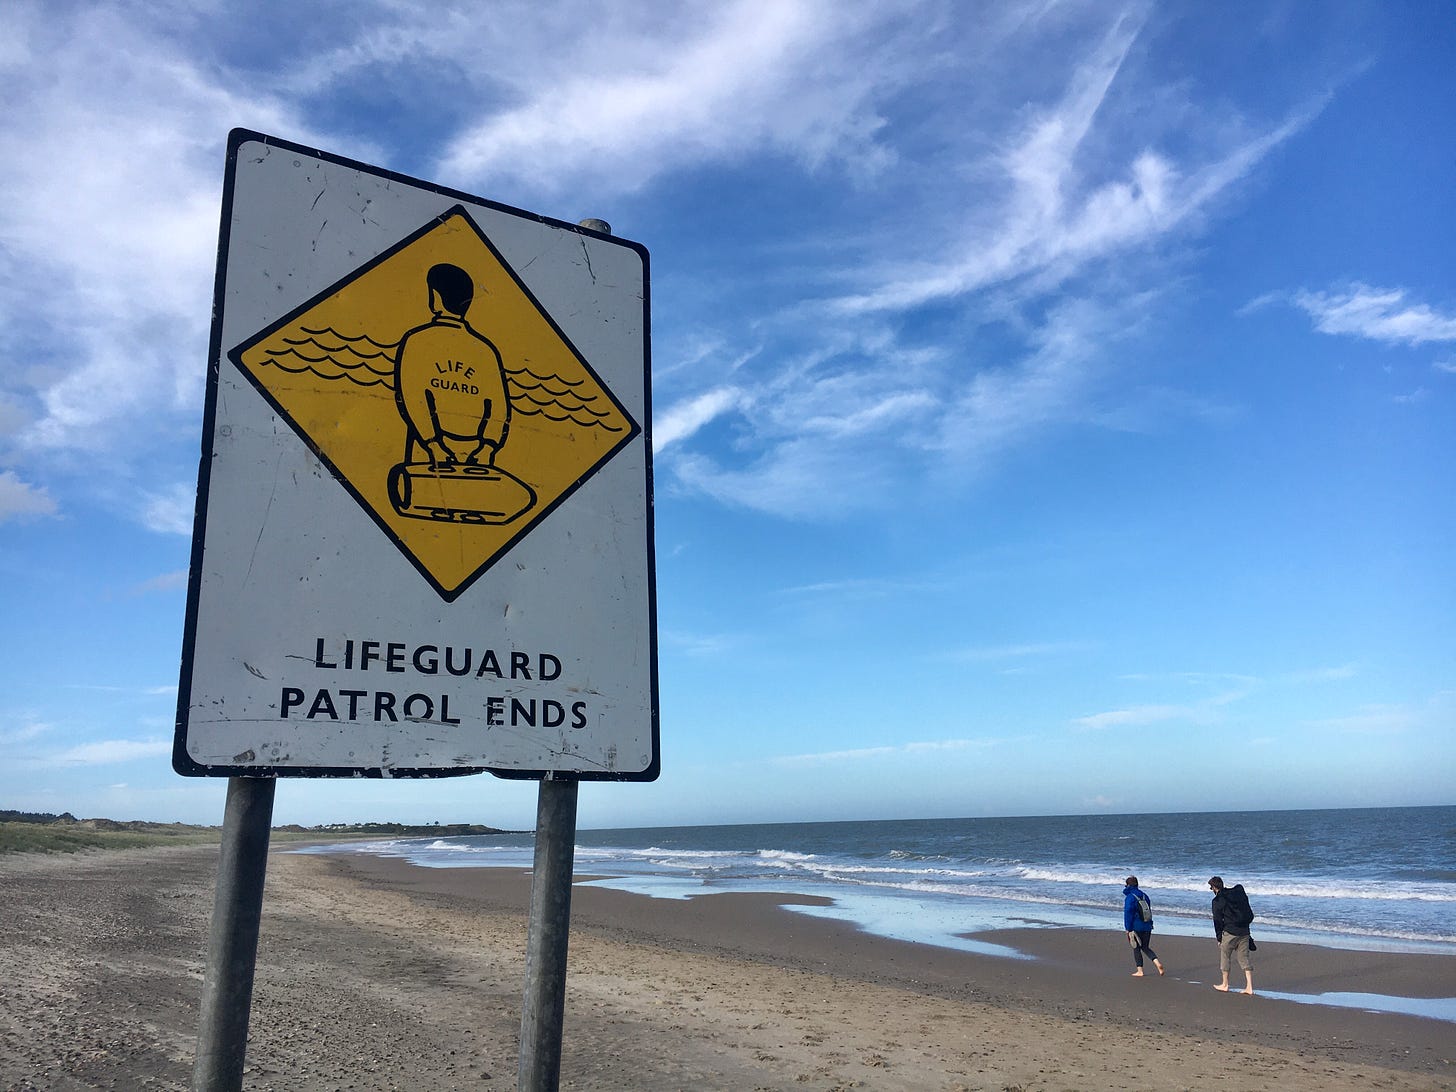 Strand mit blauem Himmel, im Vordergrund ein Schild mit der Aufschrift "Lifeguard Patrol Ends", dahinter laufen zwei Menschen.